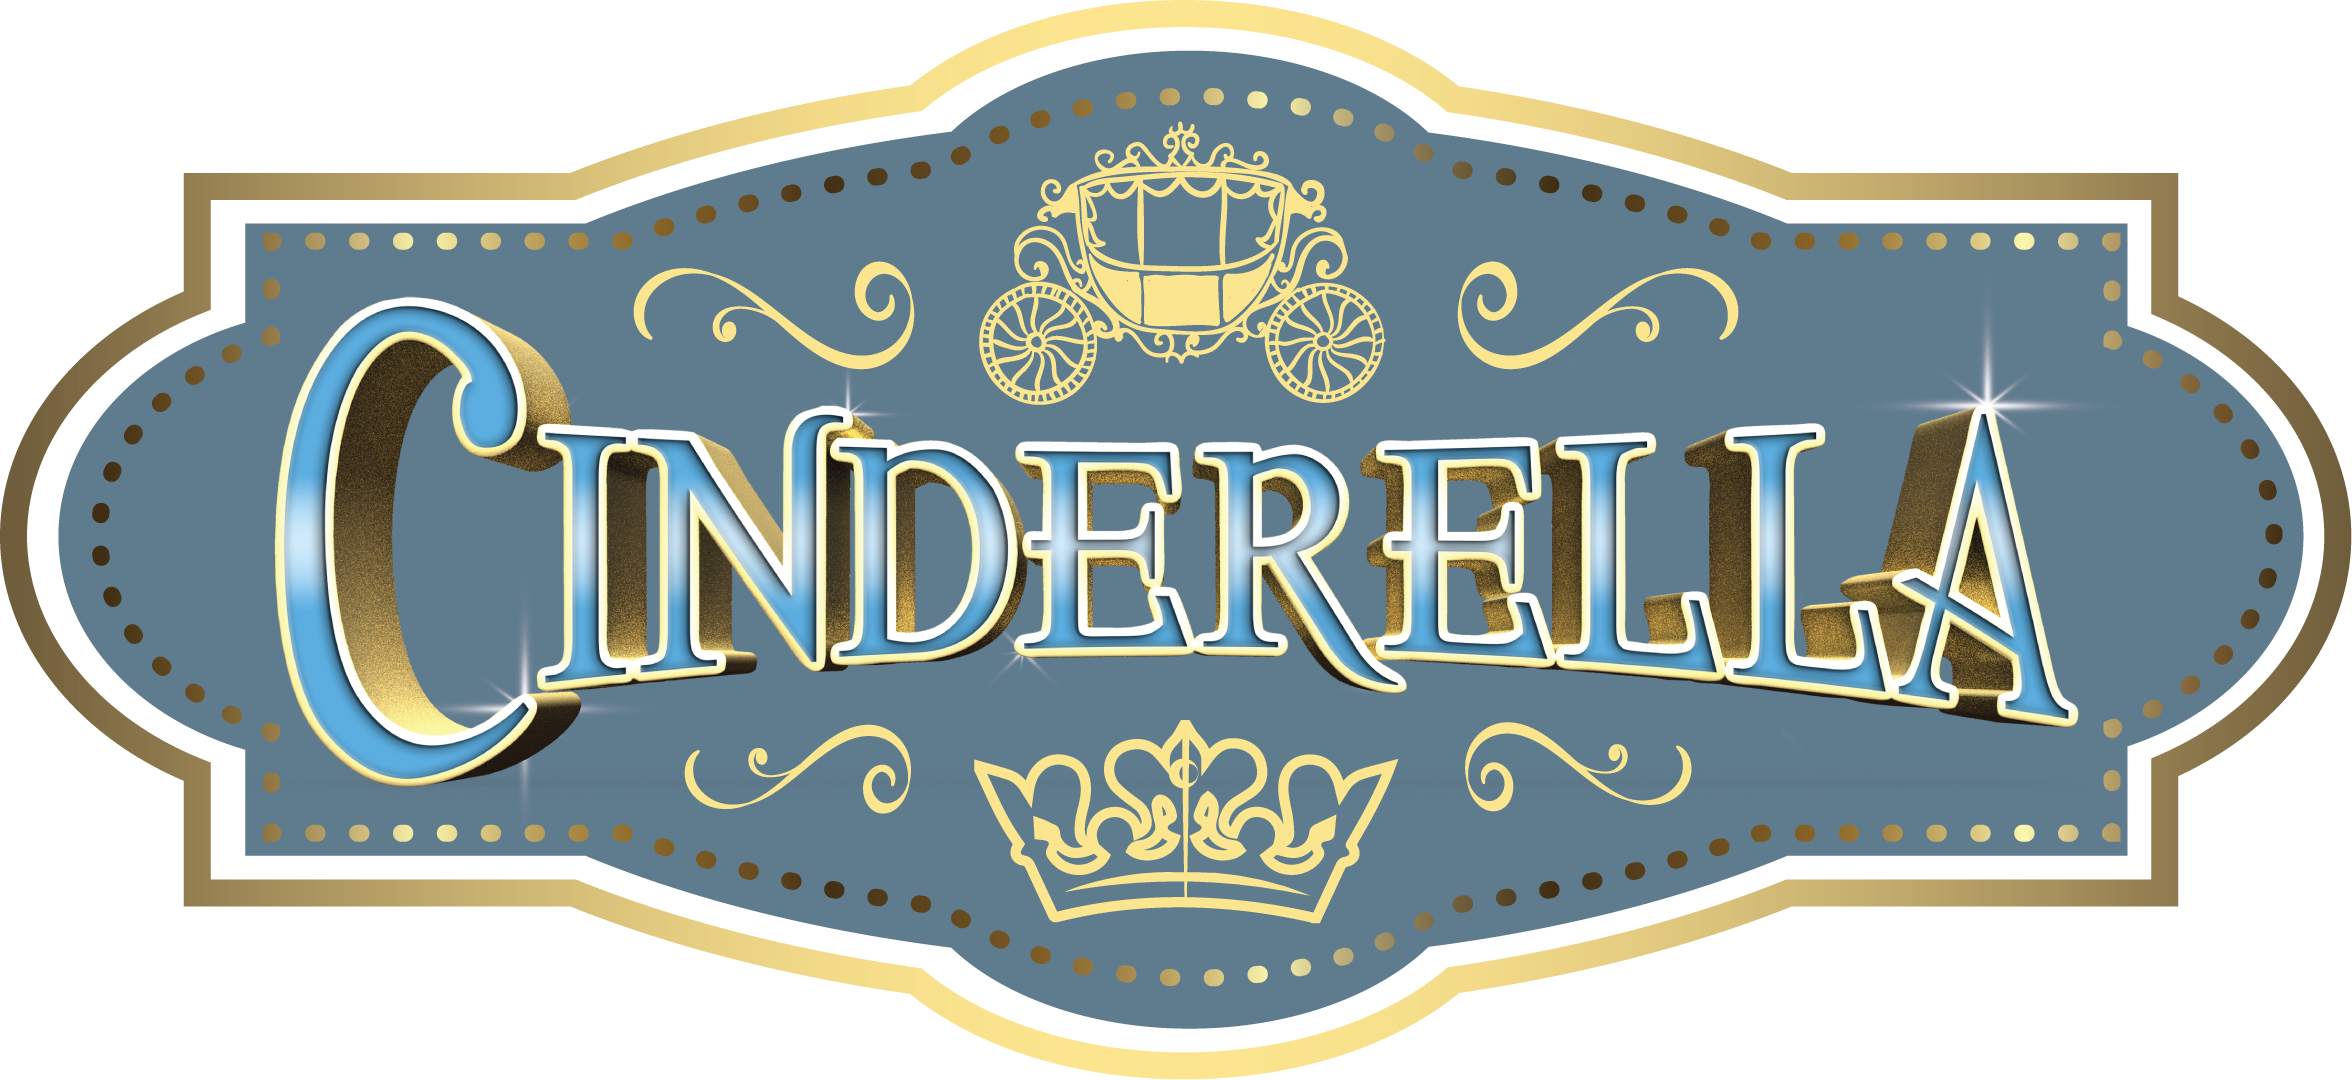 Cinderella Disney Clipart Png